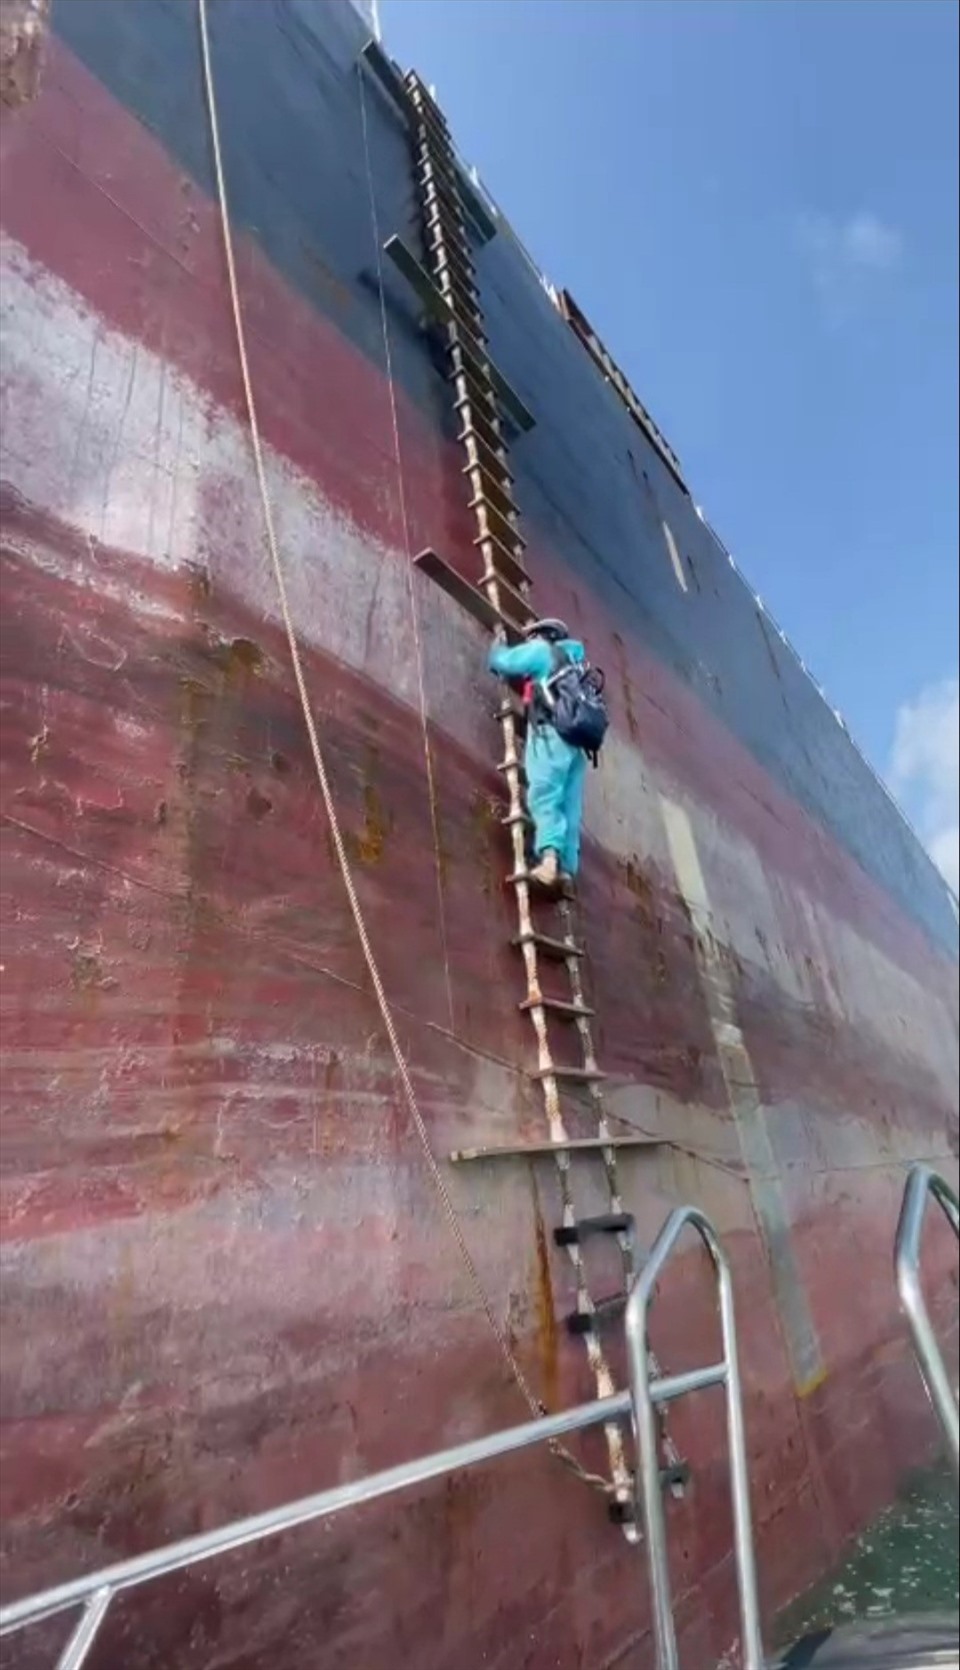 Nữ kiểm dịch viên Nguyễn Thị Phương Thảo trong một lần leo thang dây lên tàu hàng nước ngoài để lấy mẫu xét nghiệm COVID-19 cho các thuyền viên, thủy thủ. Ảnh cắt từ video clip